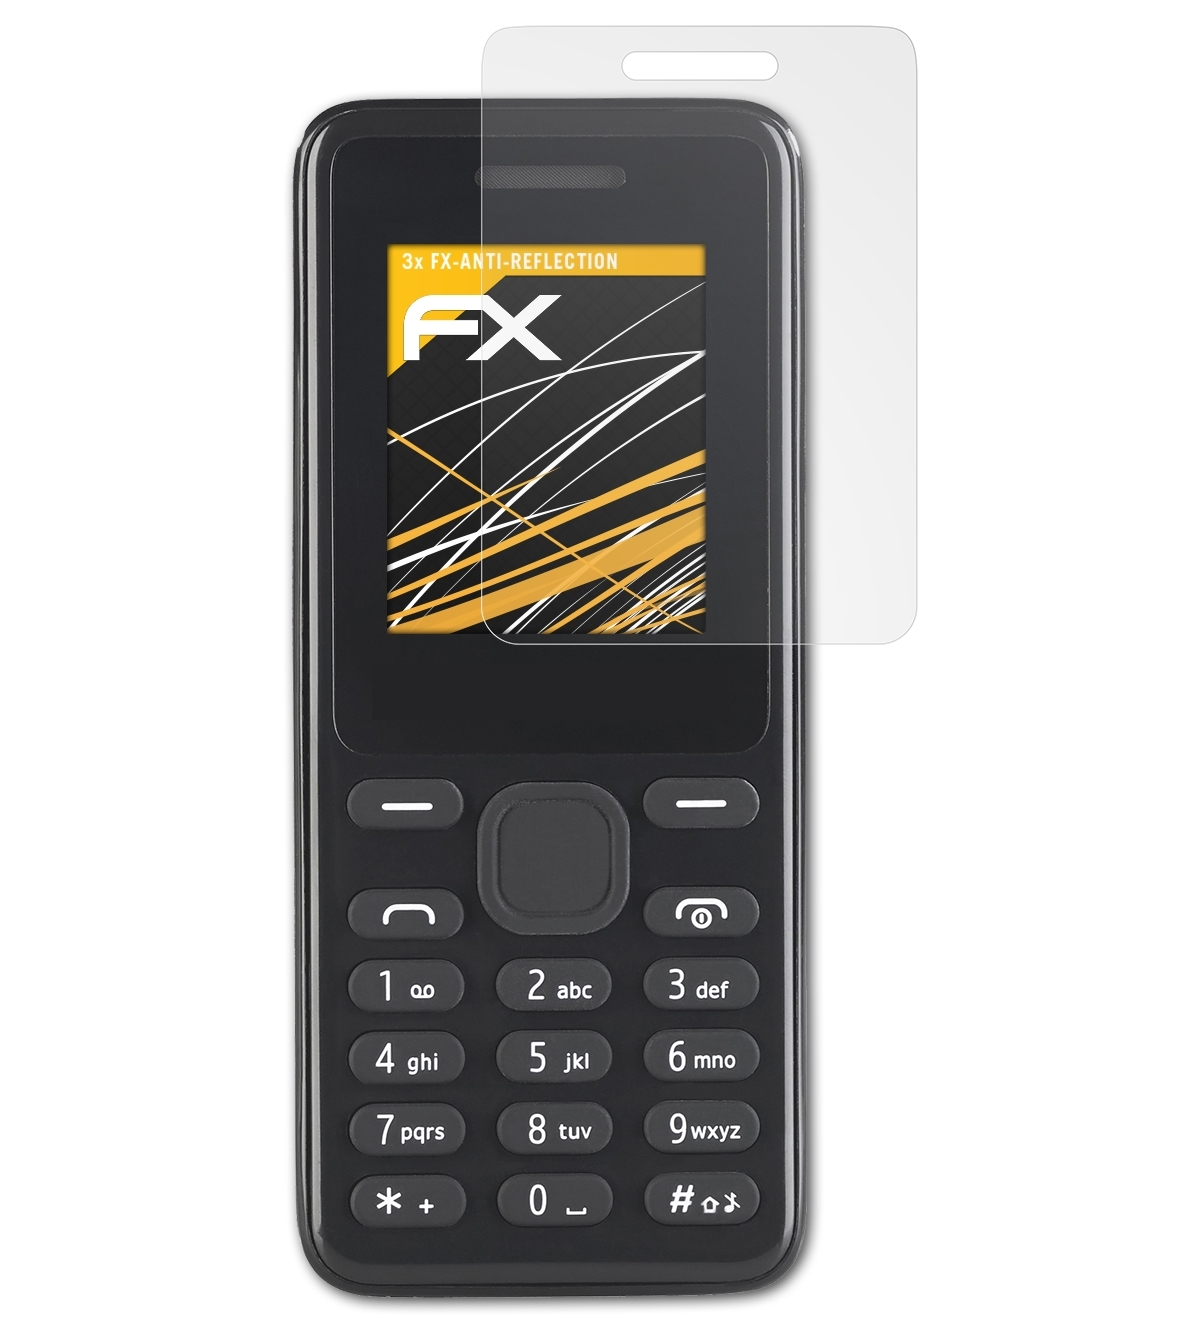 3x Displayschutz(für ATFOLIX FX-Antireflex Simvalley-Mobile SX-345)